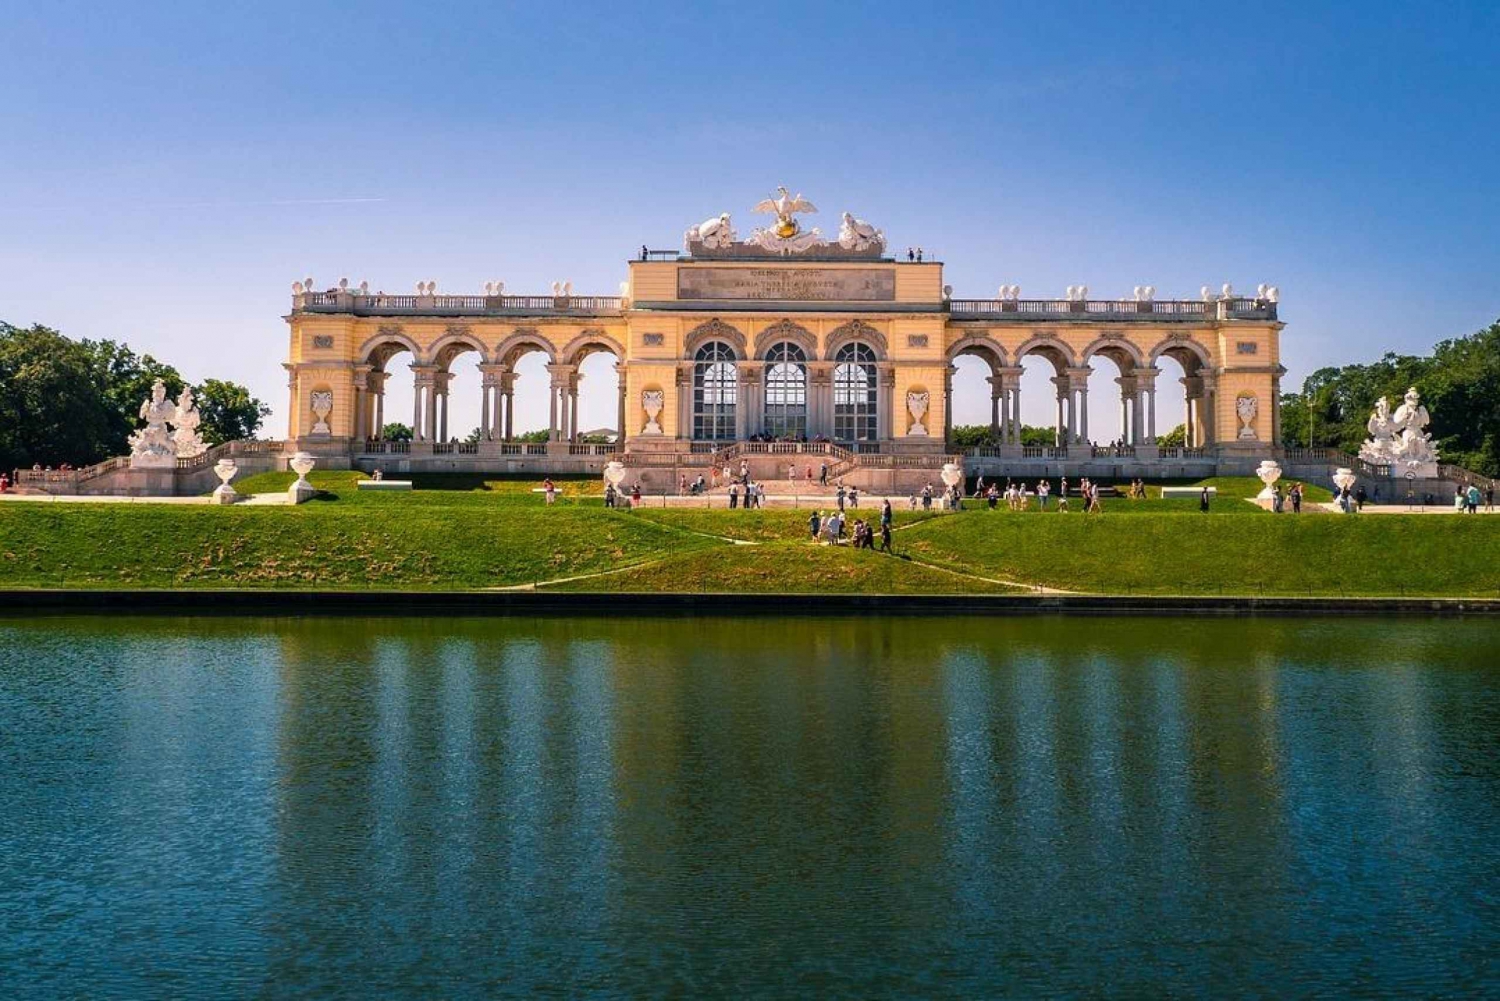 Wiedeń: Wycieczka po ogrodach Schönbrunn z opcjonalną wycieczką po pałacu